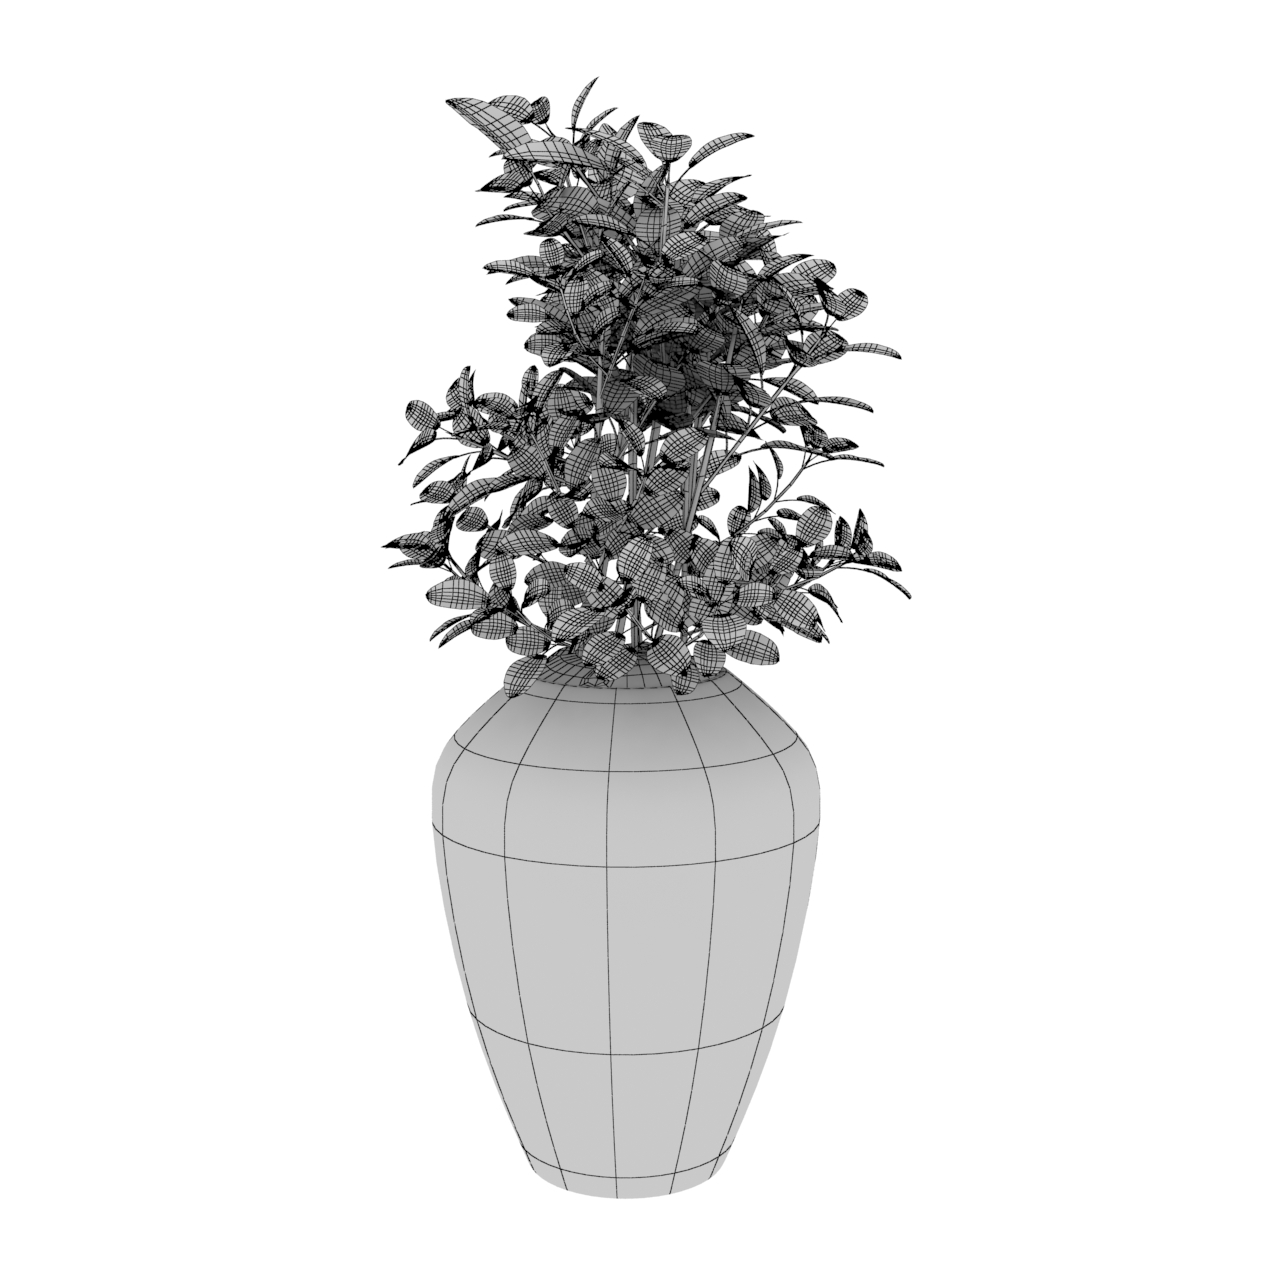 green plants pot culture 3d model